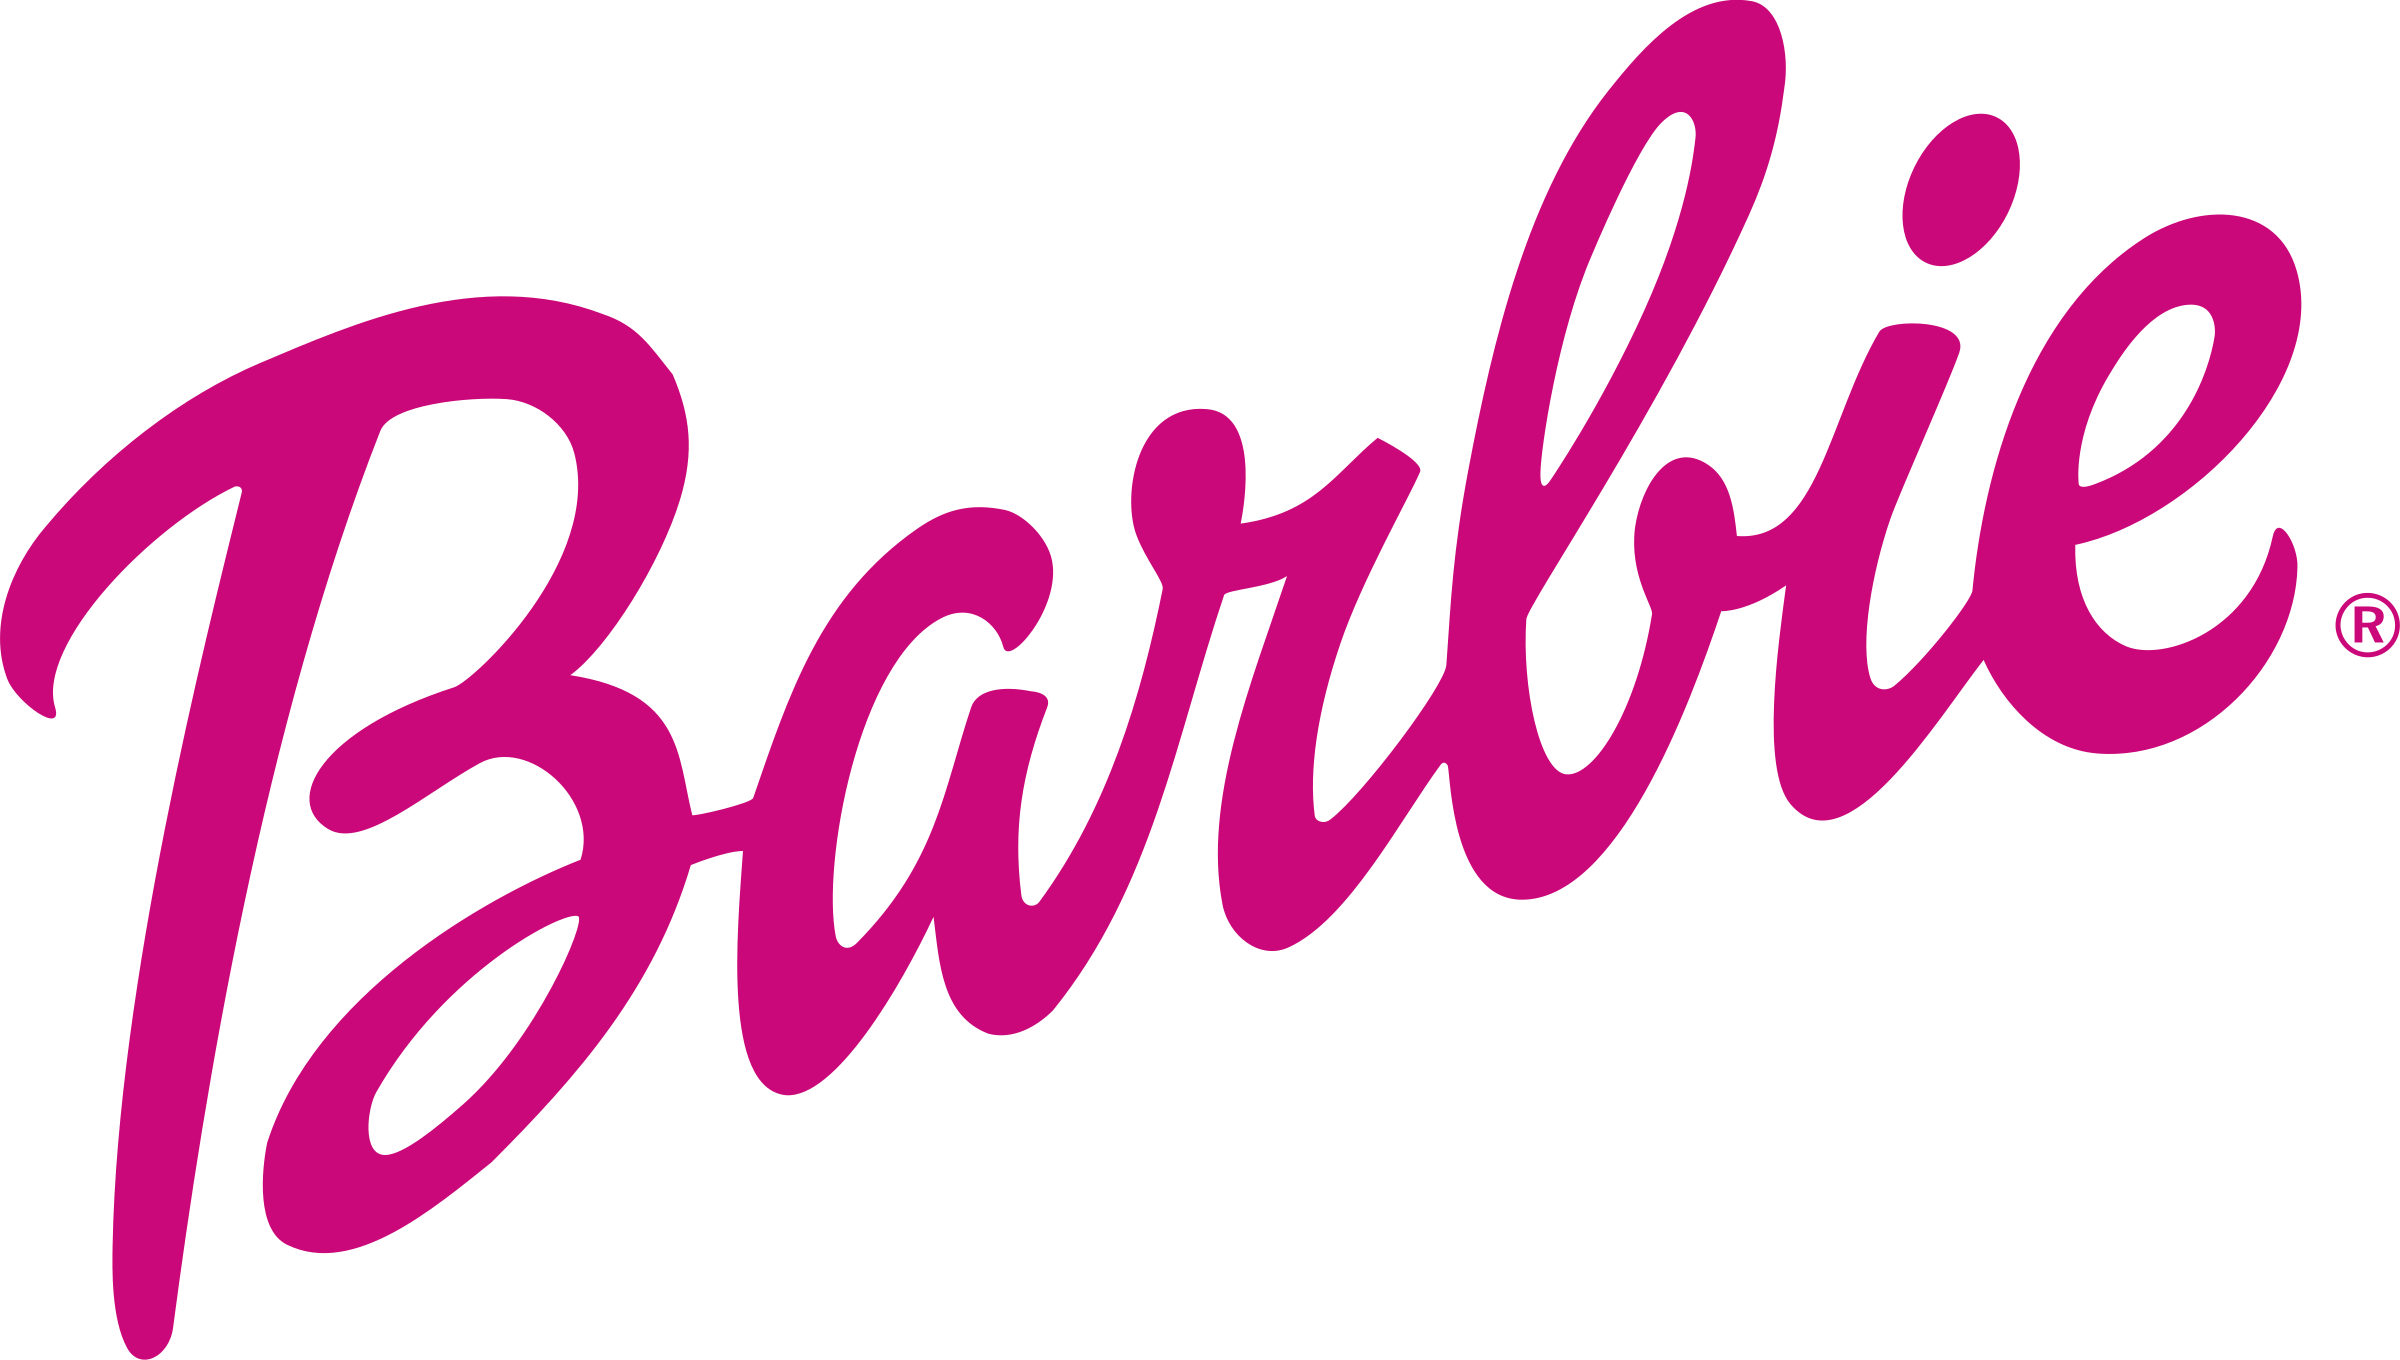 Barbie Logo Png Transparent & Svg Vector   Pluspng Pluspng.com - Barbie, Transparent background PNG HD thumbnail